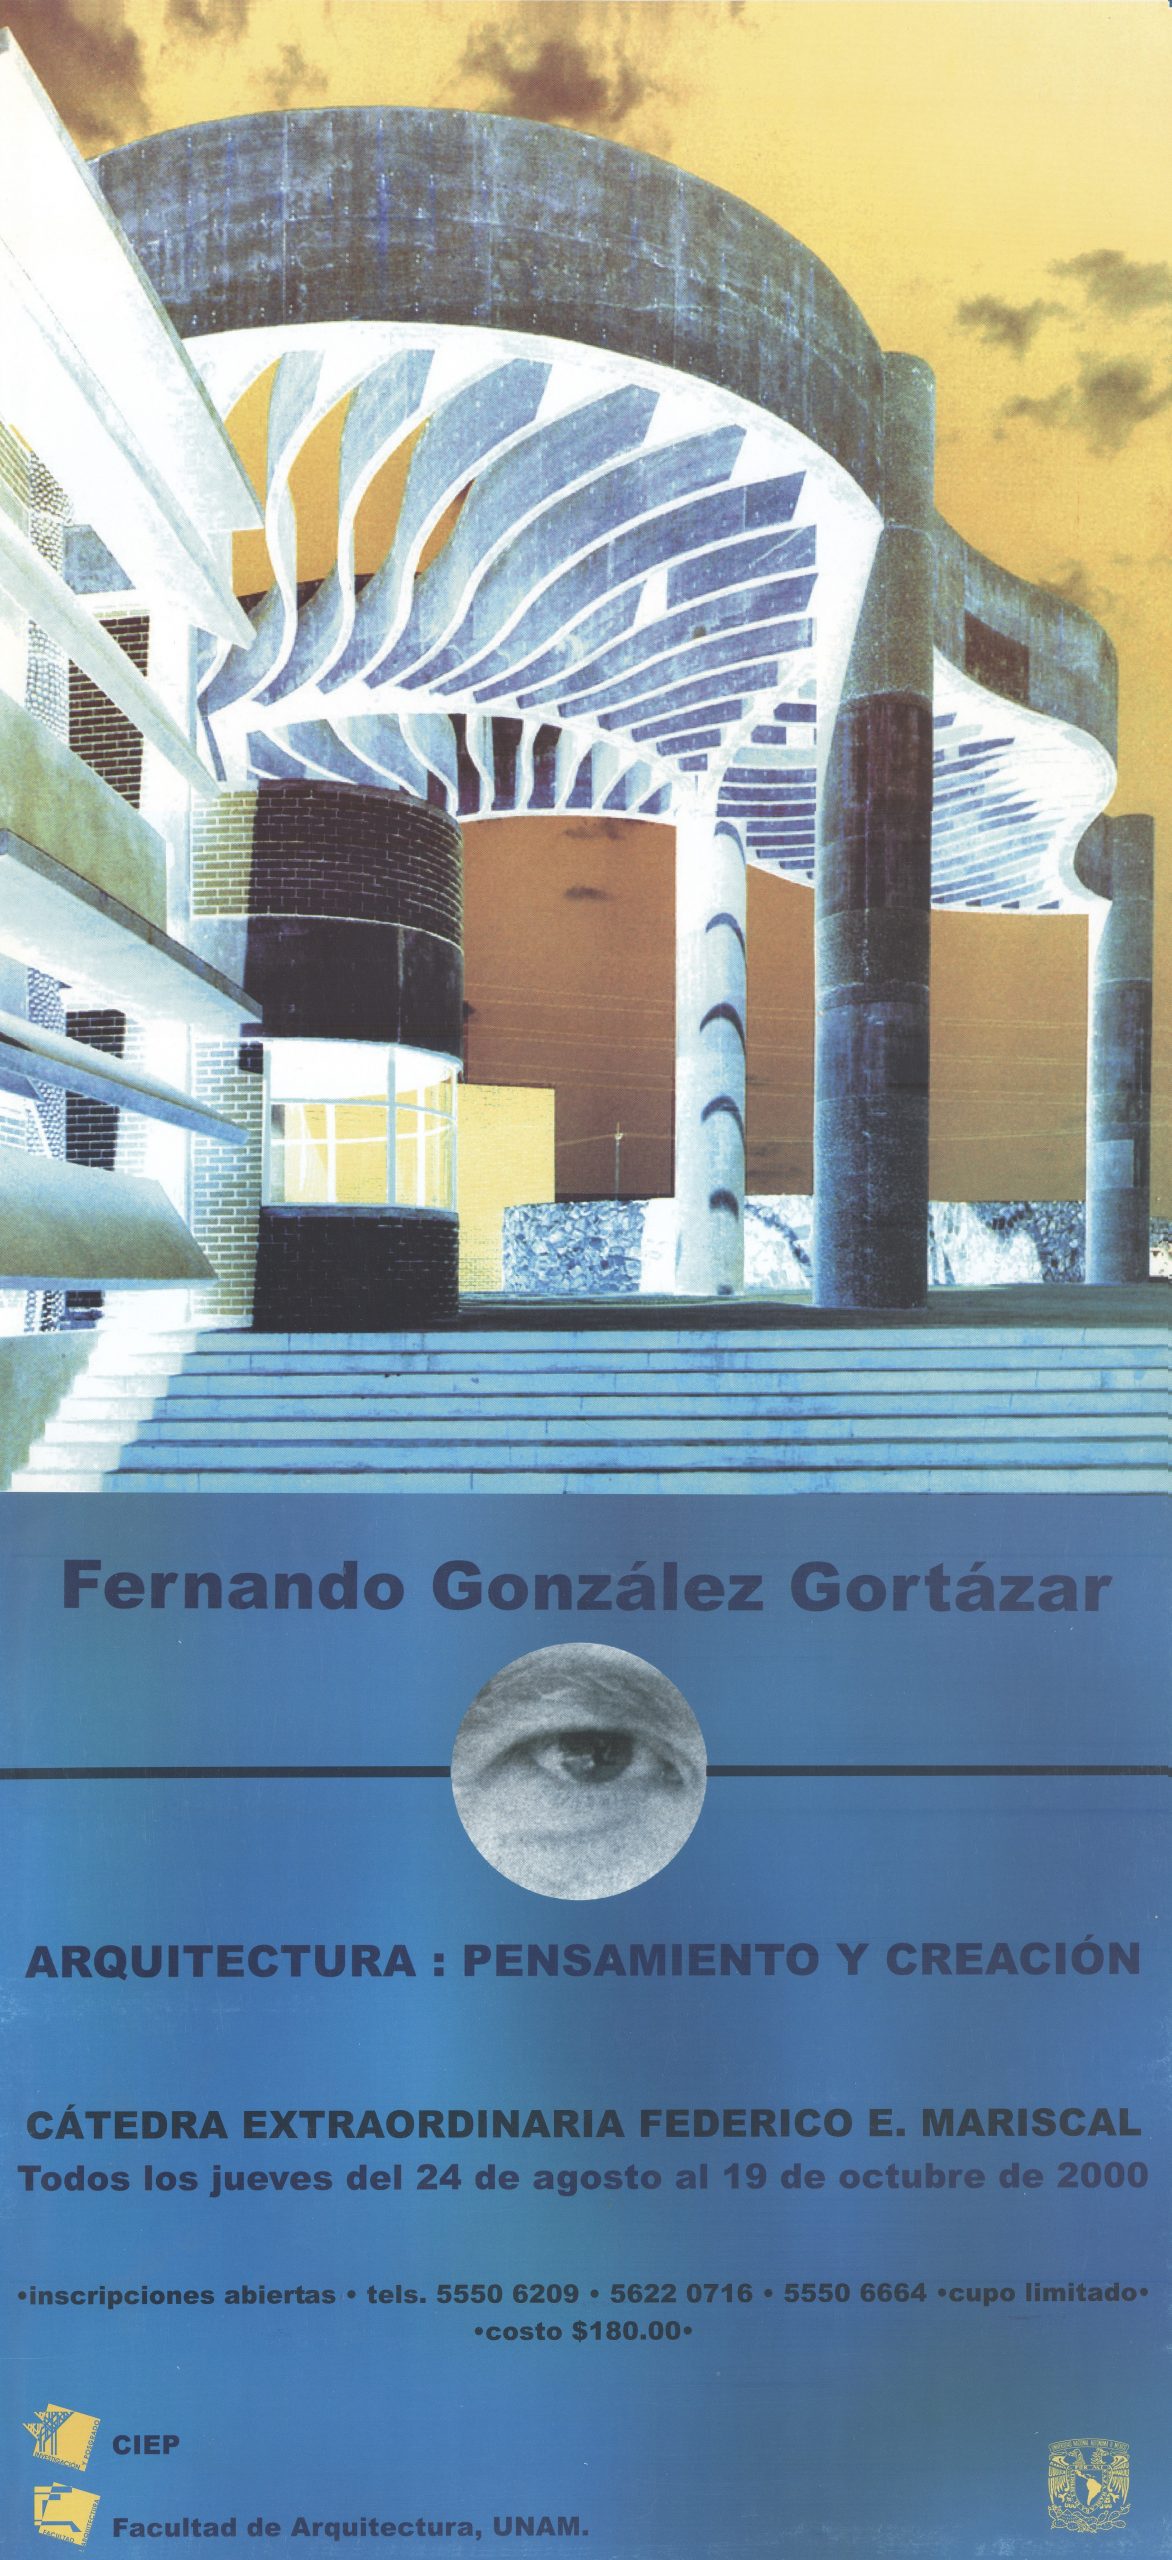 Arq. Fernando González Gortázar